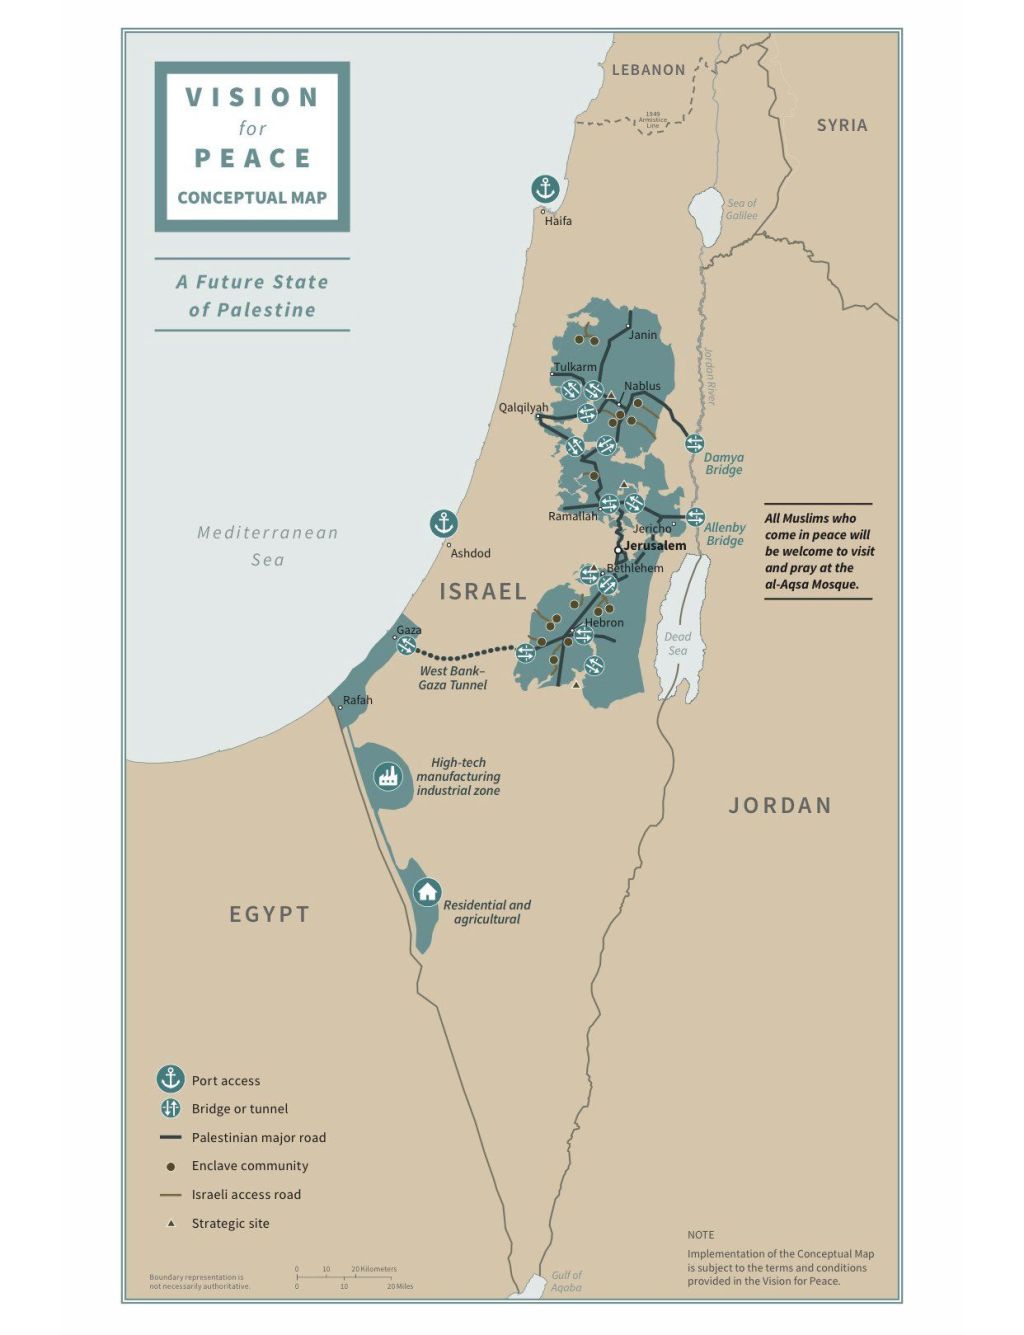 Este es el mapa oficial del plan. Las zonas en verde serían el futuro Estado palestino. Como se ve, hay conexión por distintas vías, con la Franja de Gaza, a la que se agregarían dos áreas que hoy son parte de Israel en el Negev.